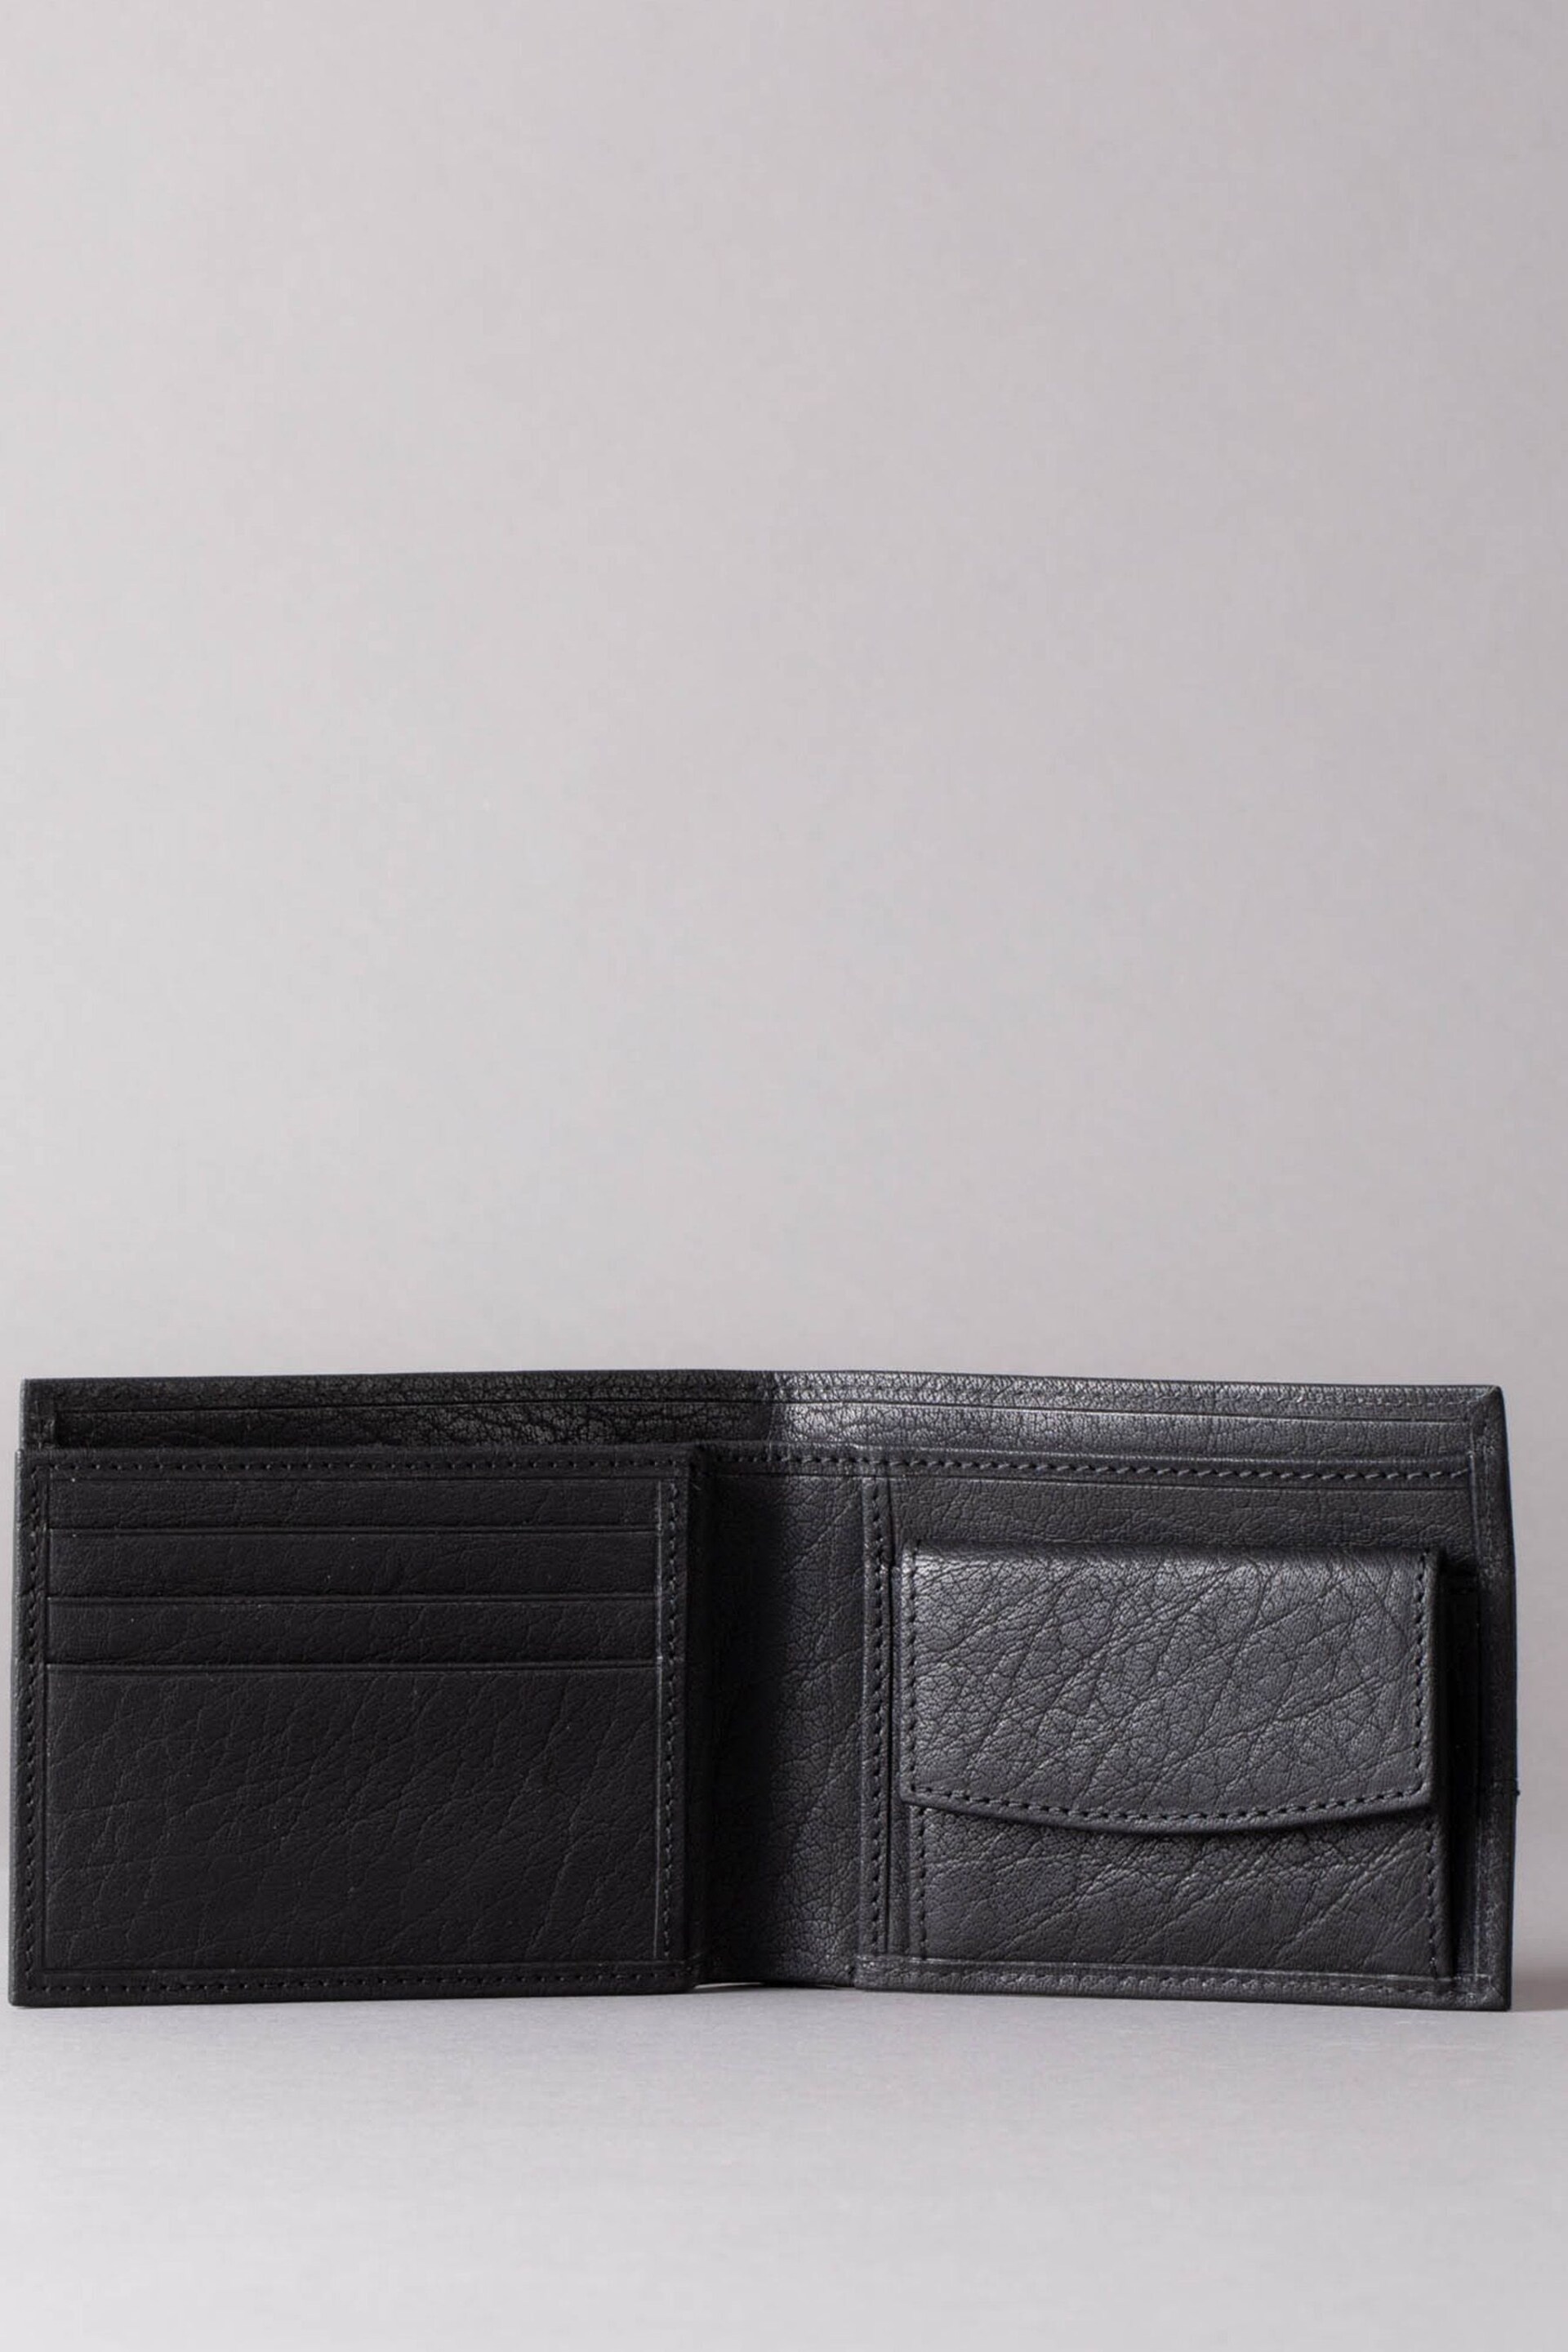 Lakeland Leather Keswick Leather Men's Wallet - Image 3 of 6